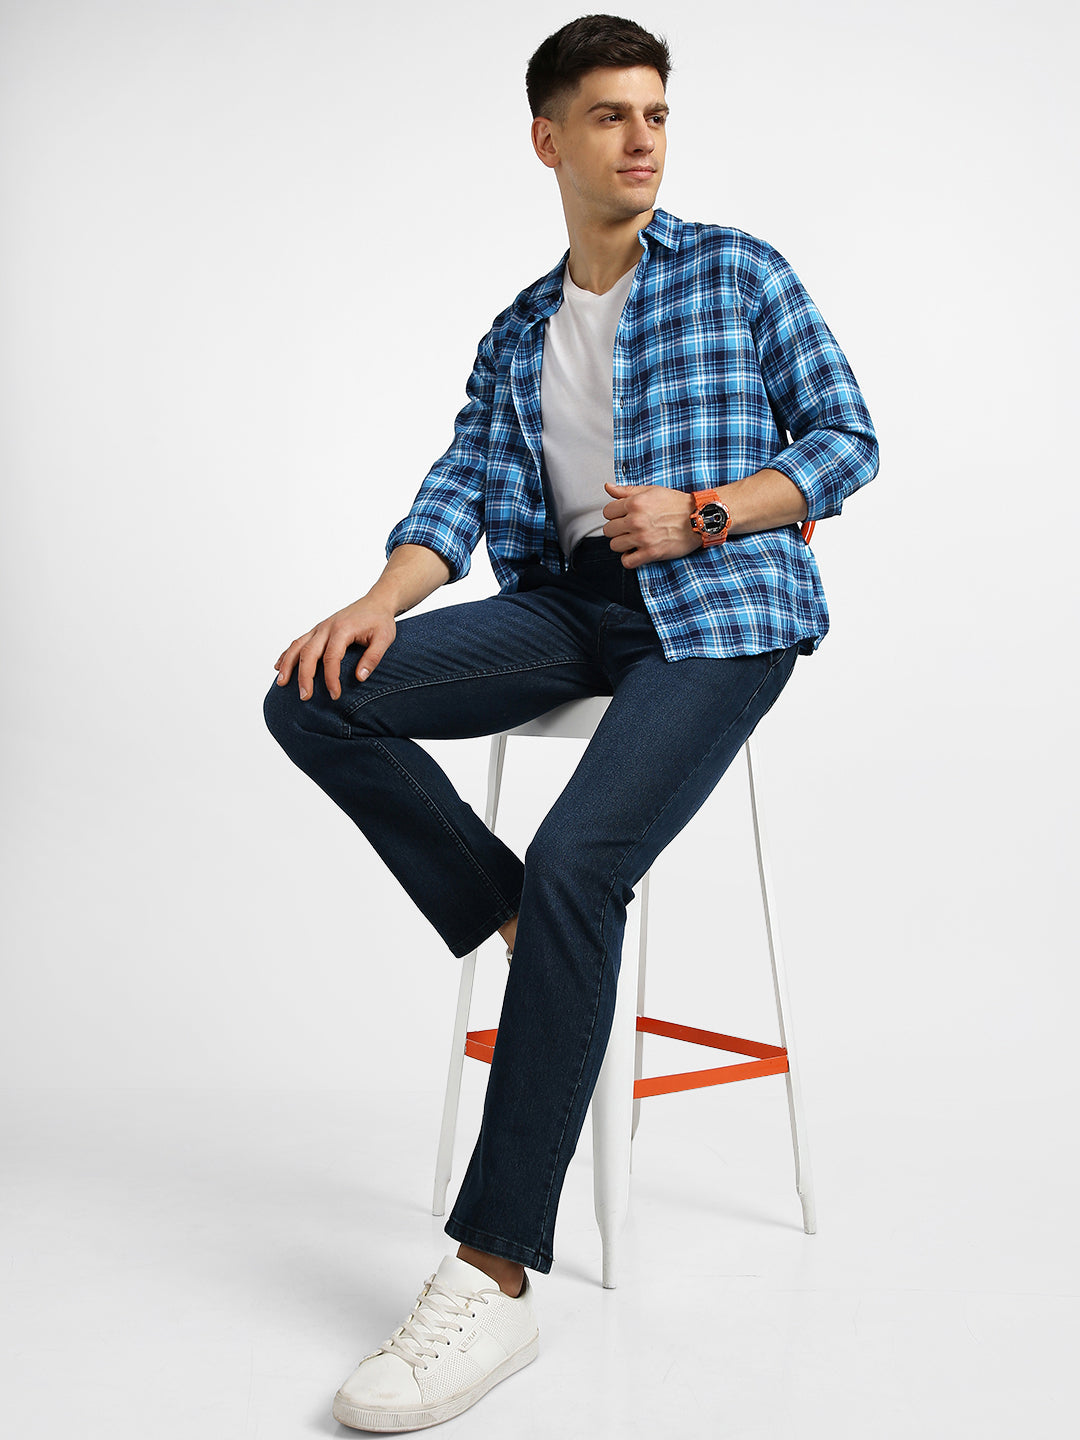 Men's Carbon Blue Regular Fit Washed Jeans Stretchable